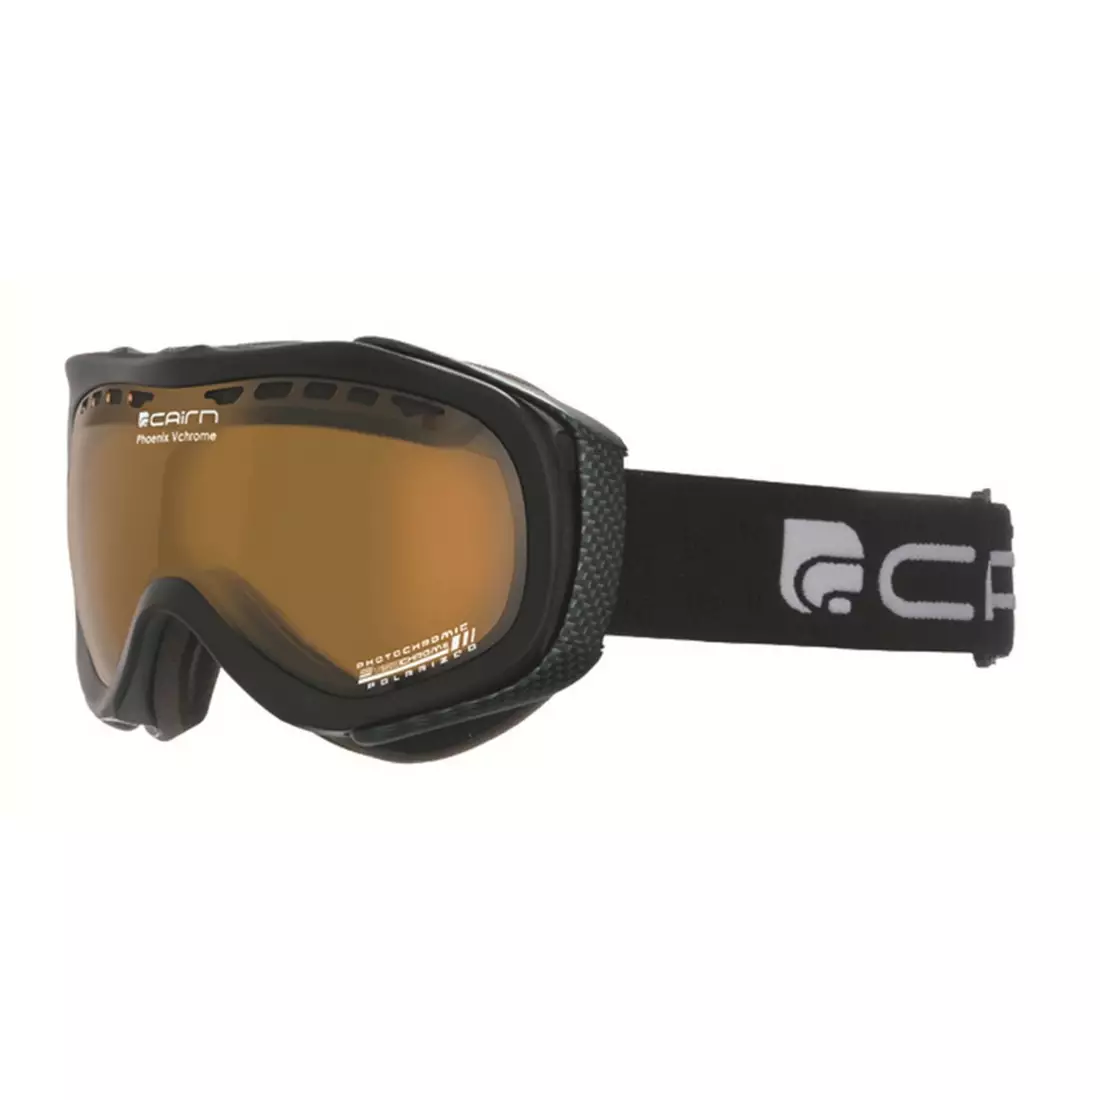 CAIRN lyžařské/snowboardové brýle Phoenix VCHROME 202, black, 580628202